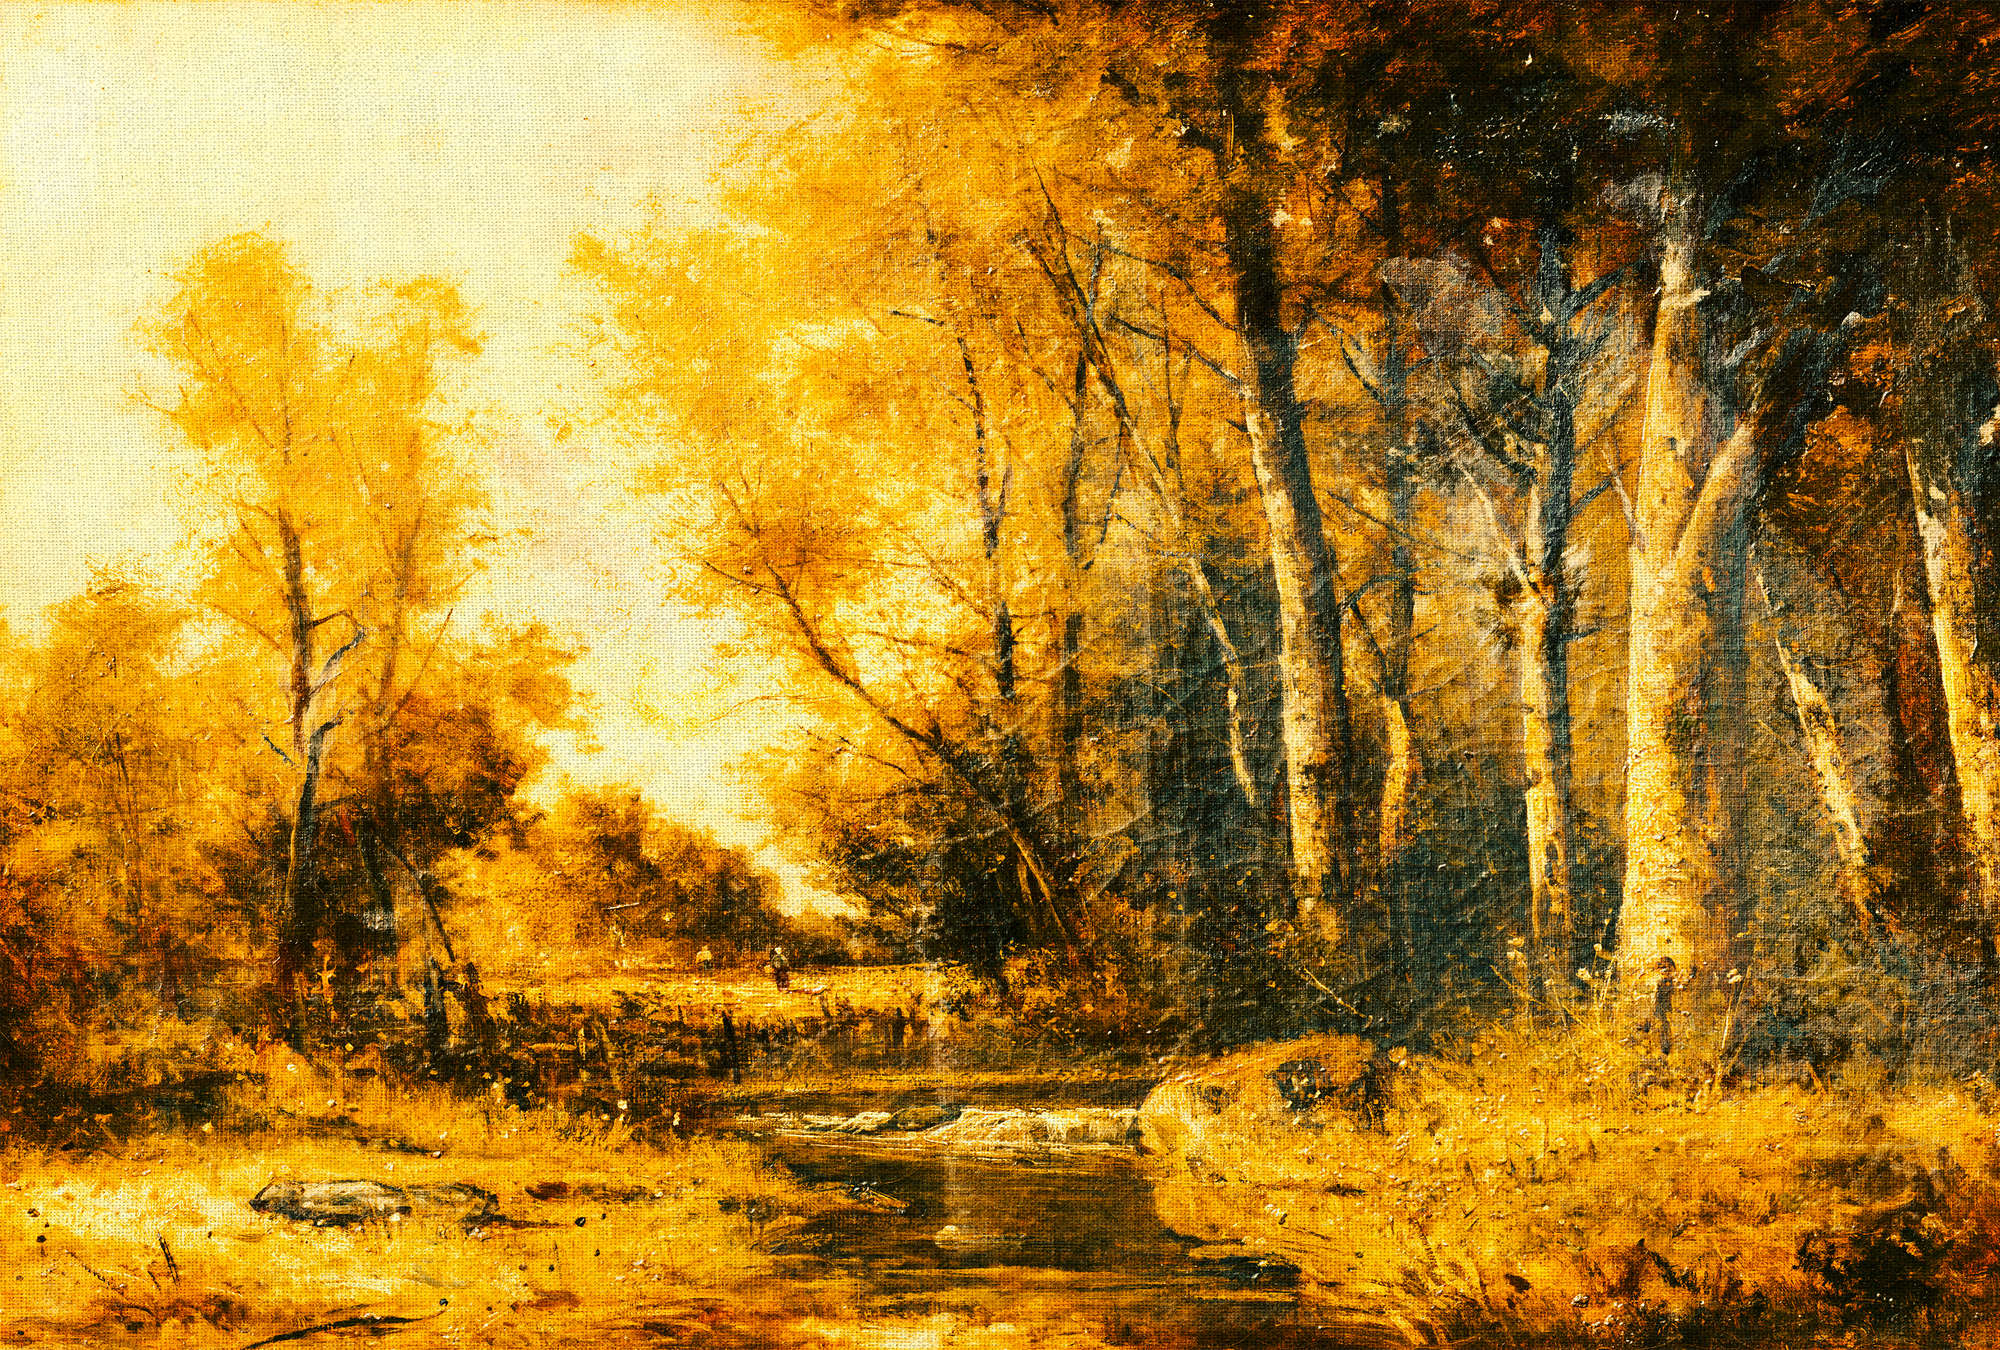             Papier peint Paysage, forêt & rivière de style artistique - jaune, orange, noir
        